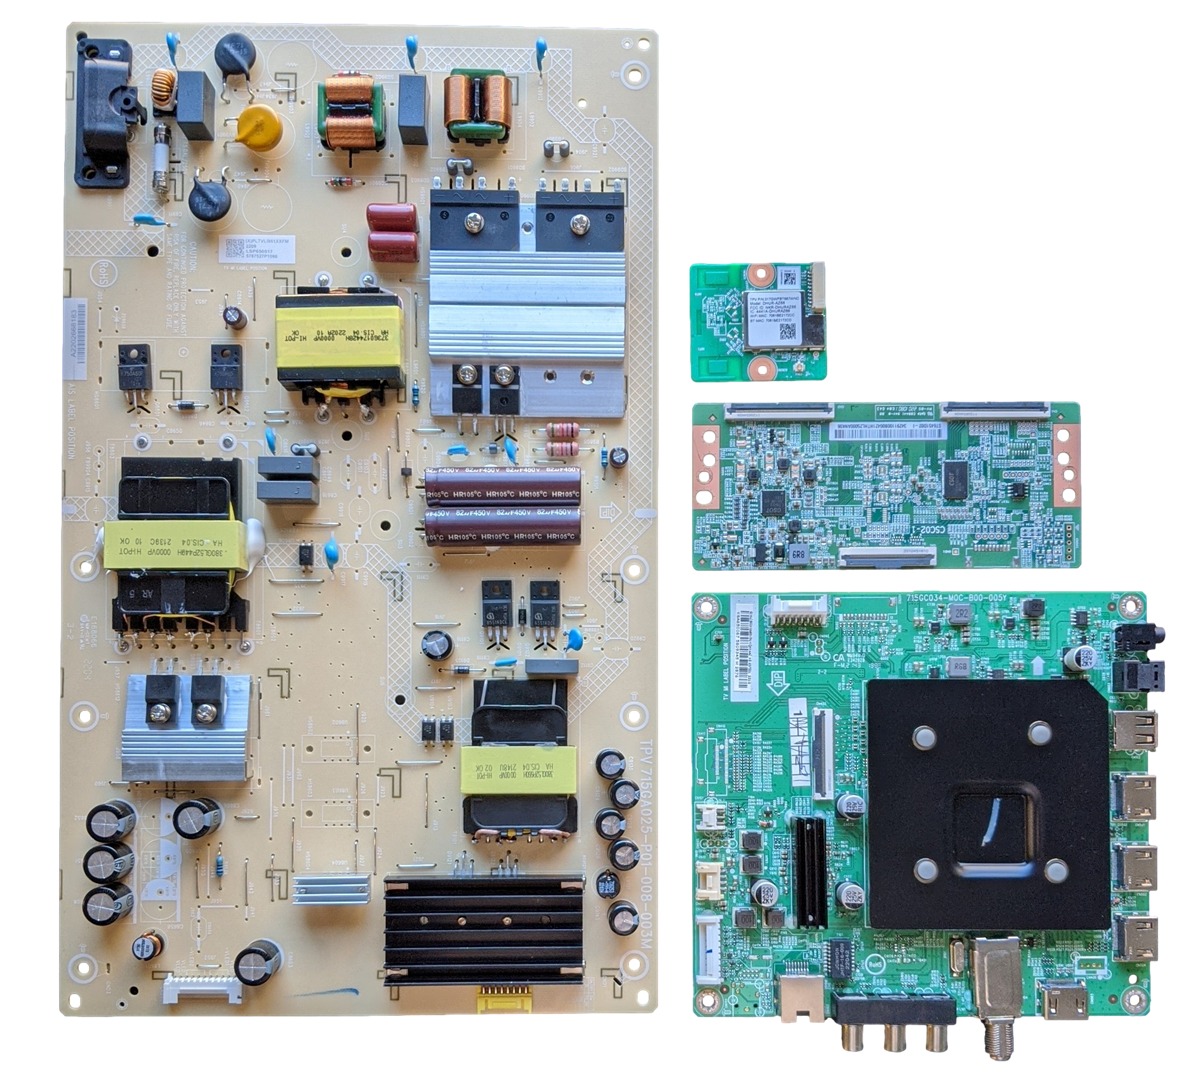 NS-65F501NA22 Insignia TV Repair Parts Kit, 756TXLCB02K068 Main Board, PLTVLI951XXFM Power Supply, 34.29110.0B0 T-Con, 317GWFBT667WNC Wifi, NS-65F501NA22